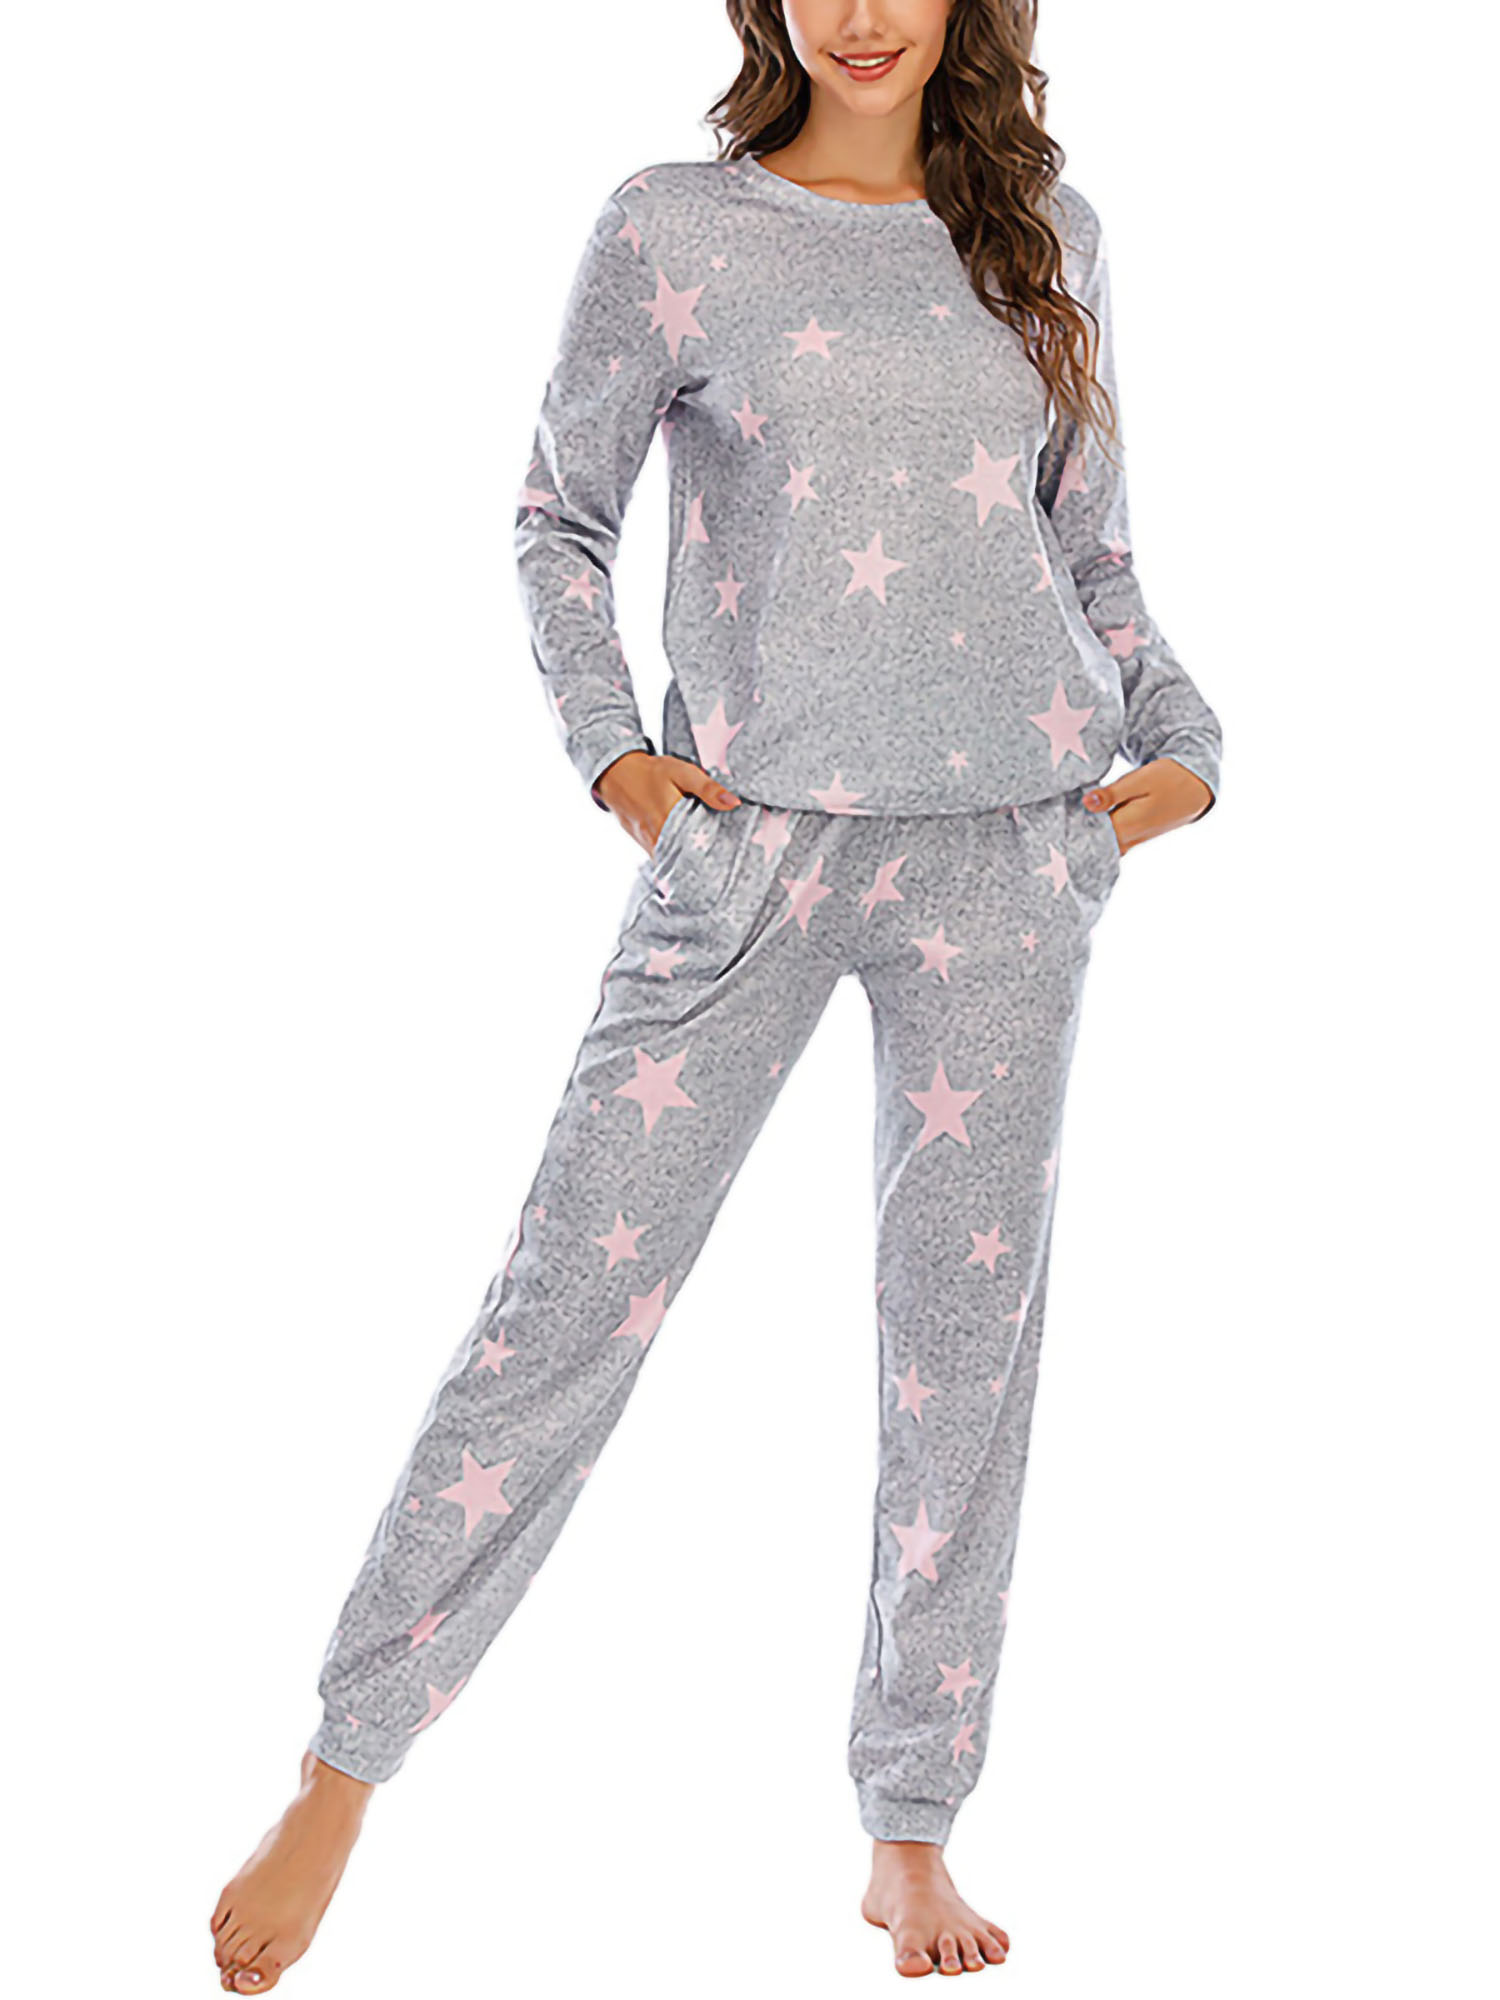 Damen Schlafanzug Pyjama Nachtwäsche Zweiteiliger Lange Hose Sommer-Set 66665